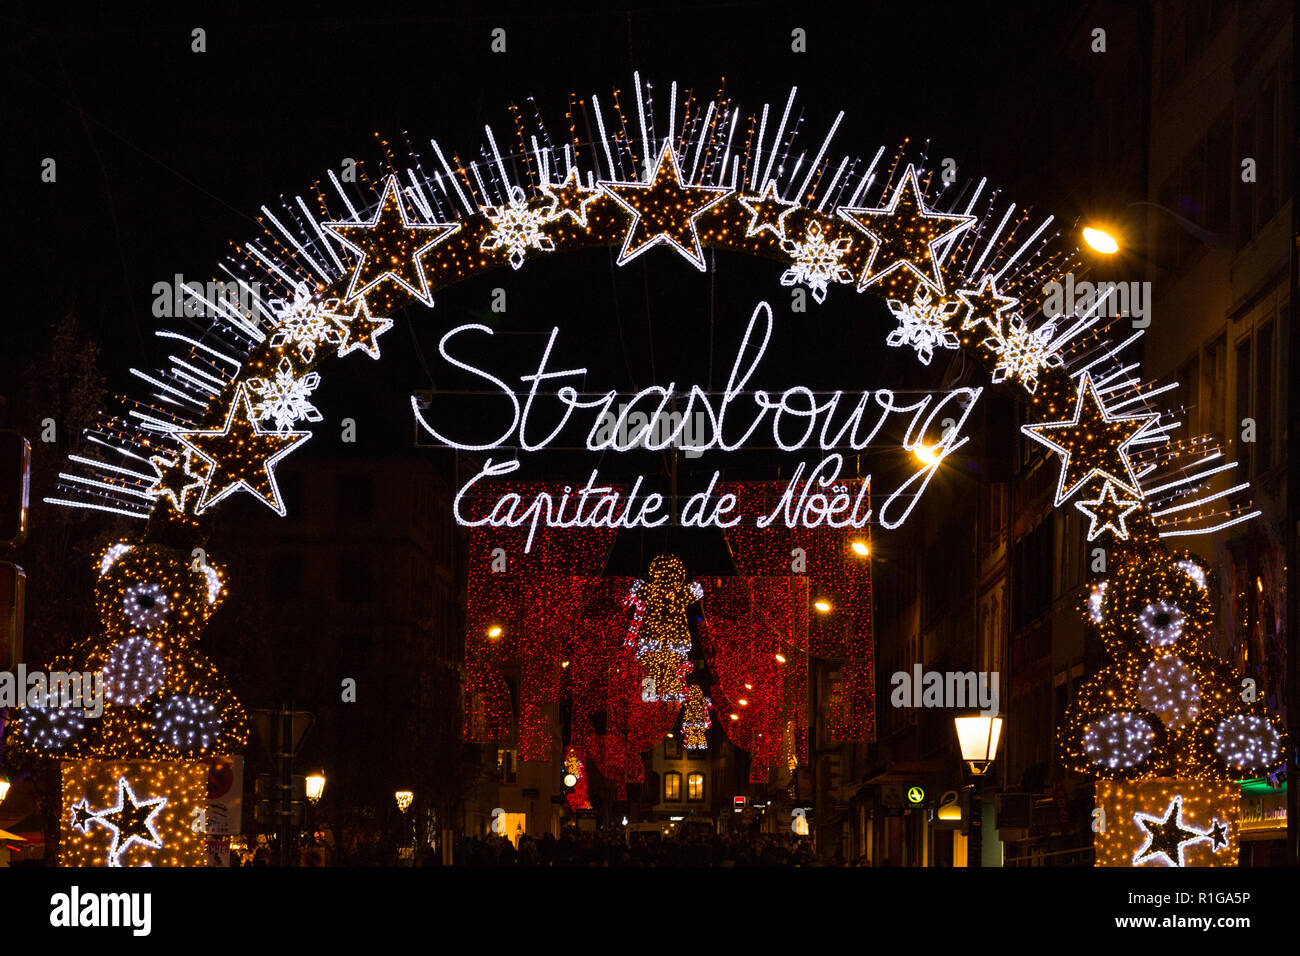 Strasbourg, France - le 9 décembre 2017 : arch disant "Strasbourg, capitale de Noël" à l'entrée du marché de Noël centre ville de Banque D'Images